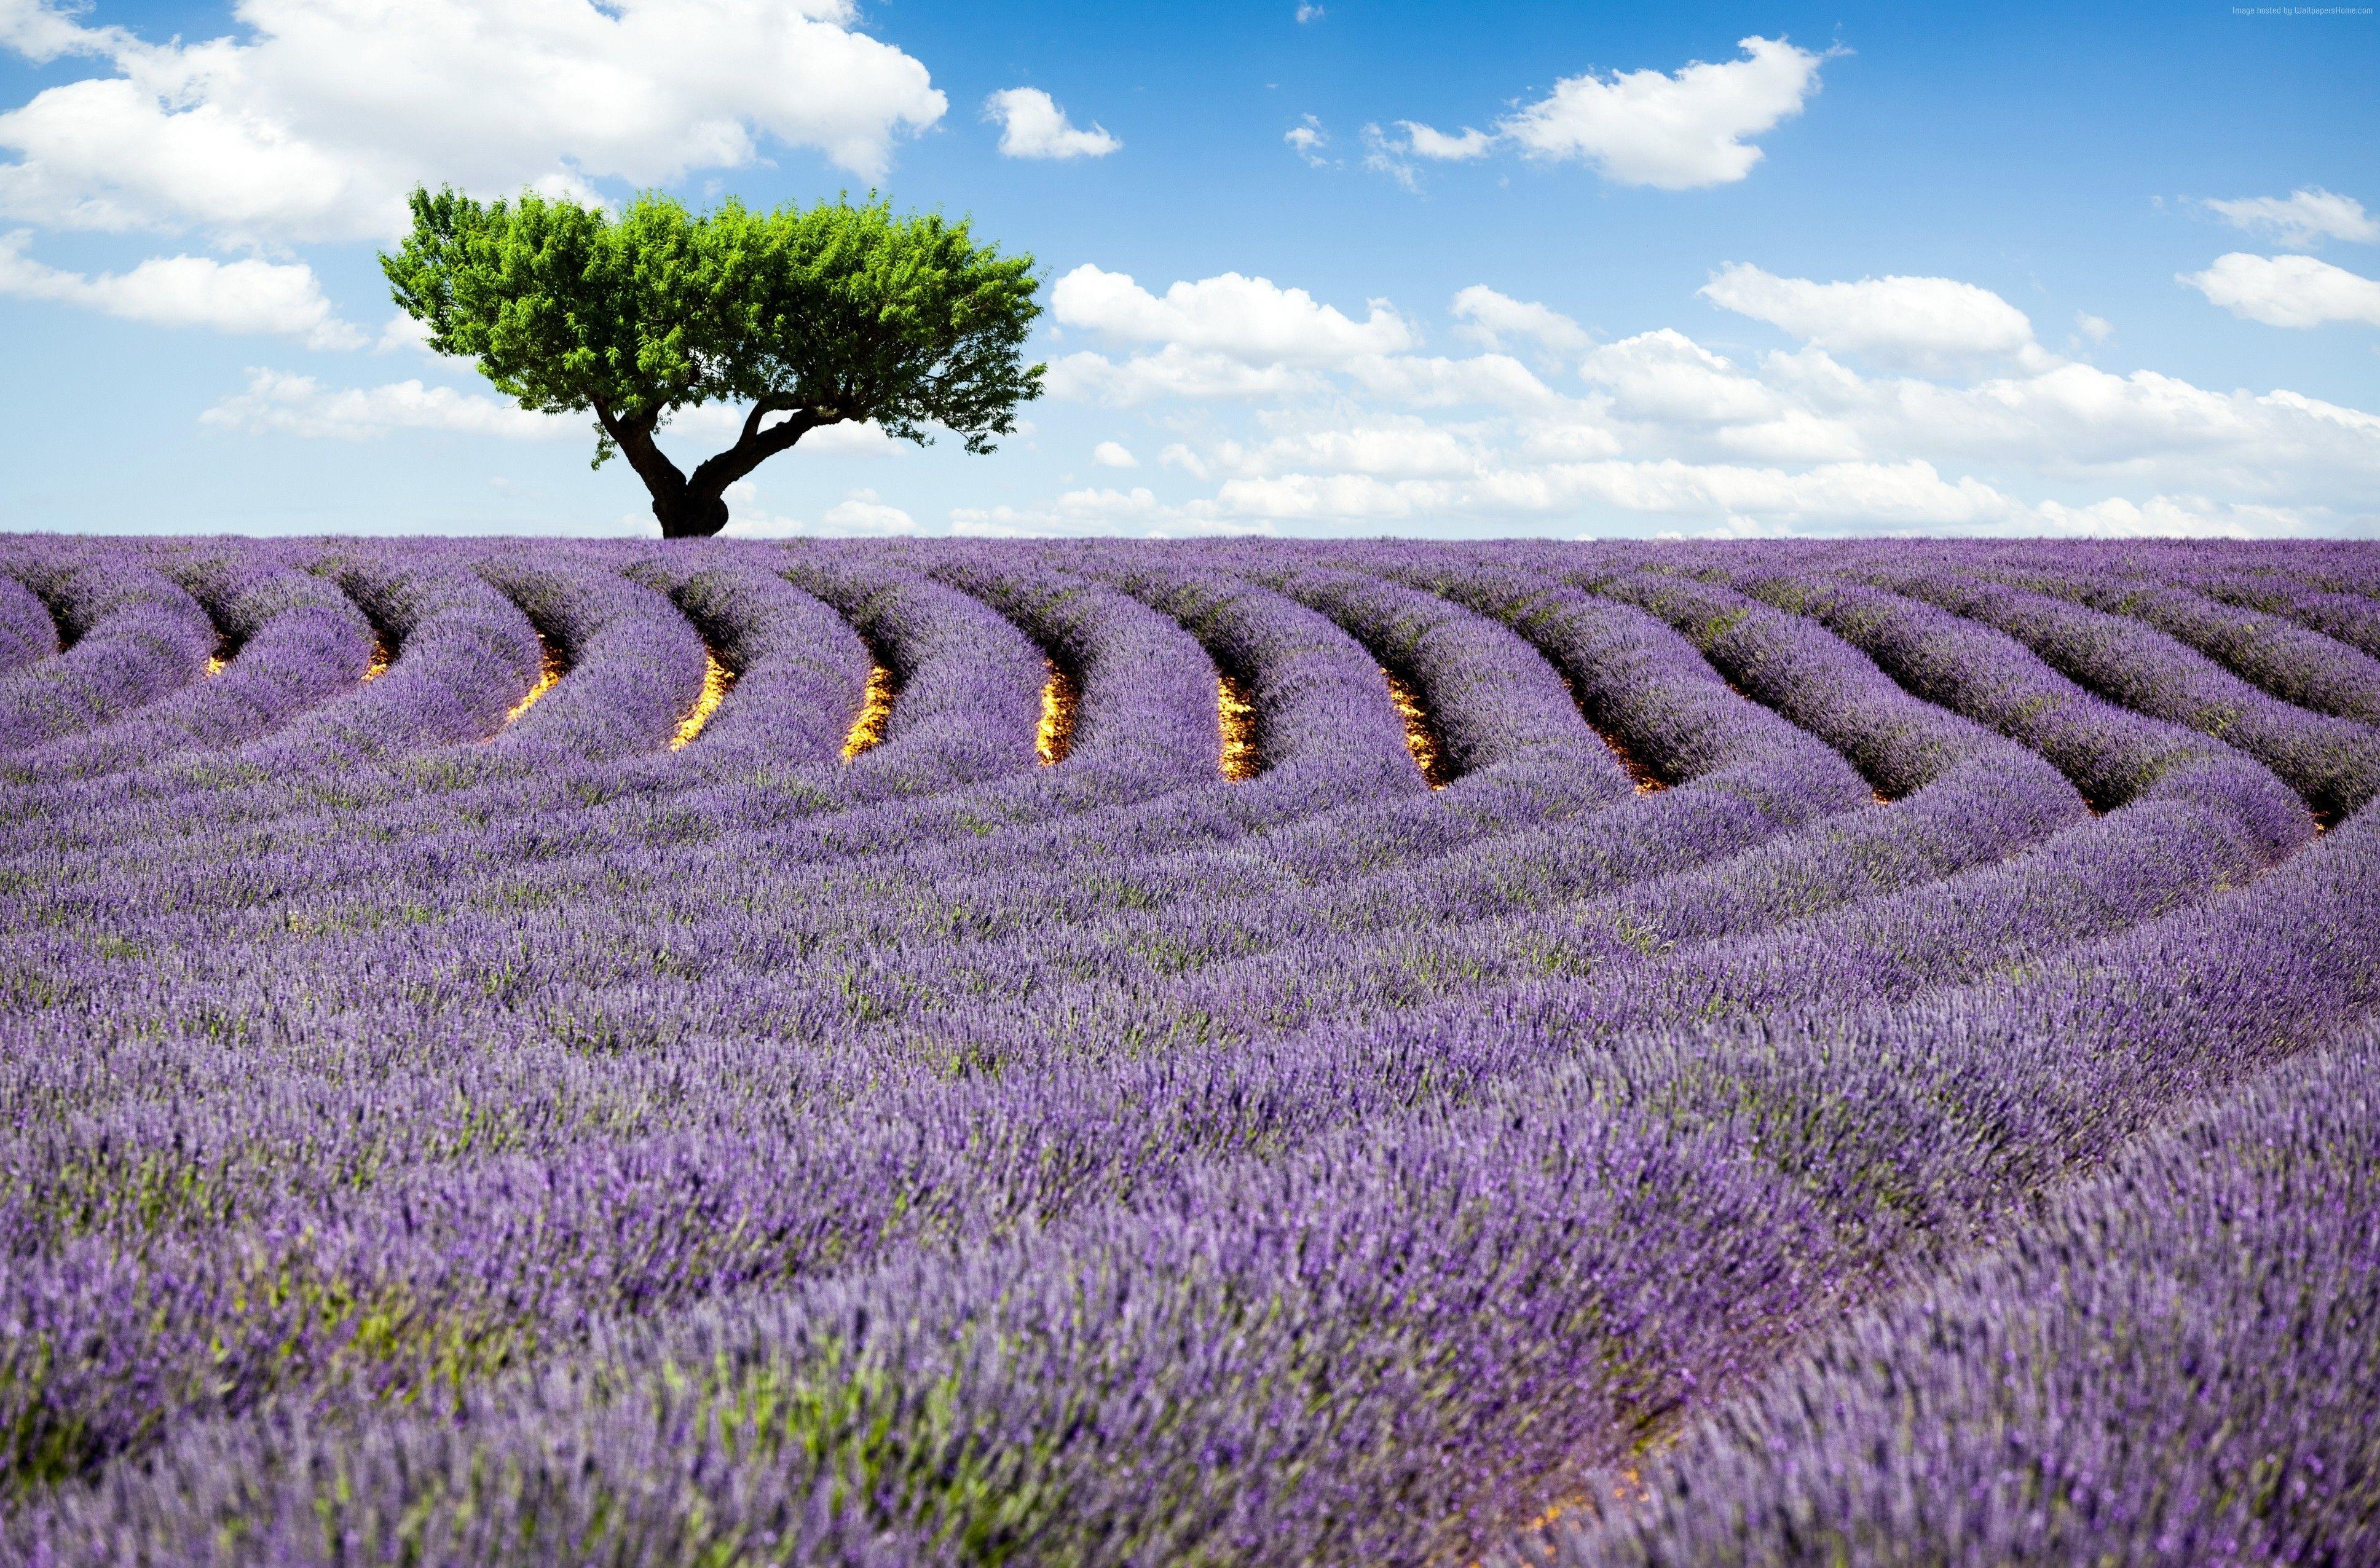 Cánh đồng oải hương Pháp là nơi lãng mạn và thơ mộng nhất. Nếu bạn muốn trải nghiệm vẻ đẹp tuyệt vời của những cánh đồng này, hãy xem hình ảnh liên quan!